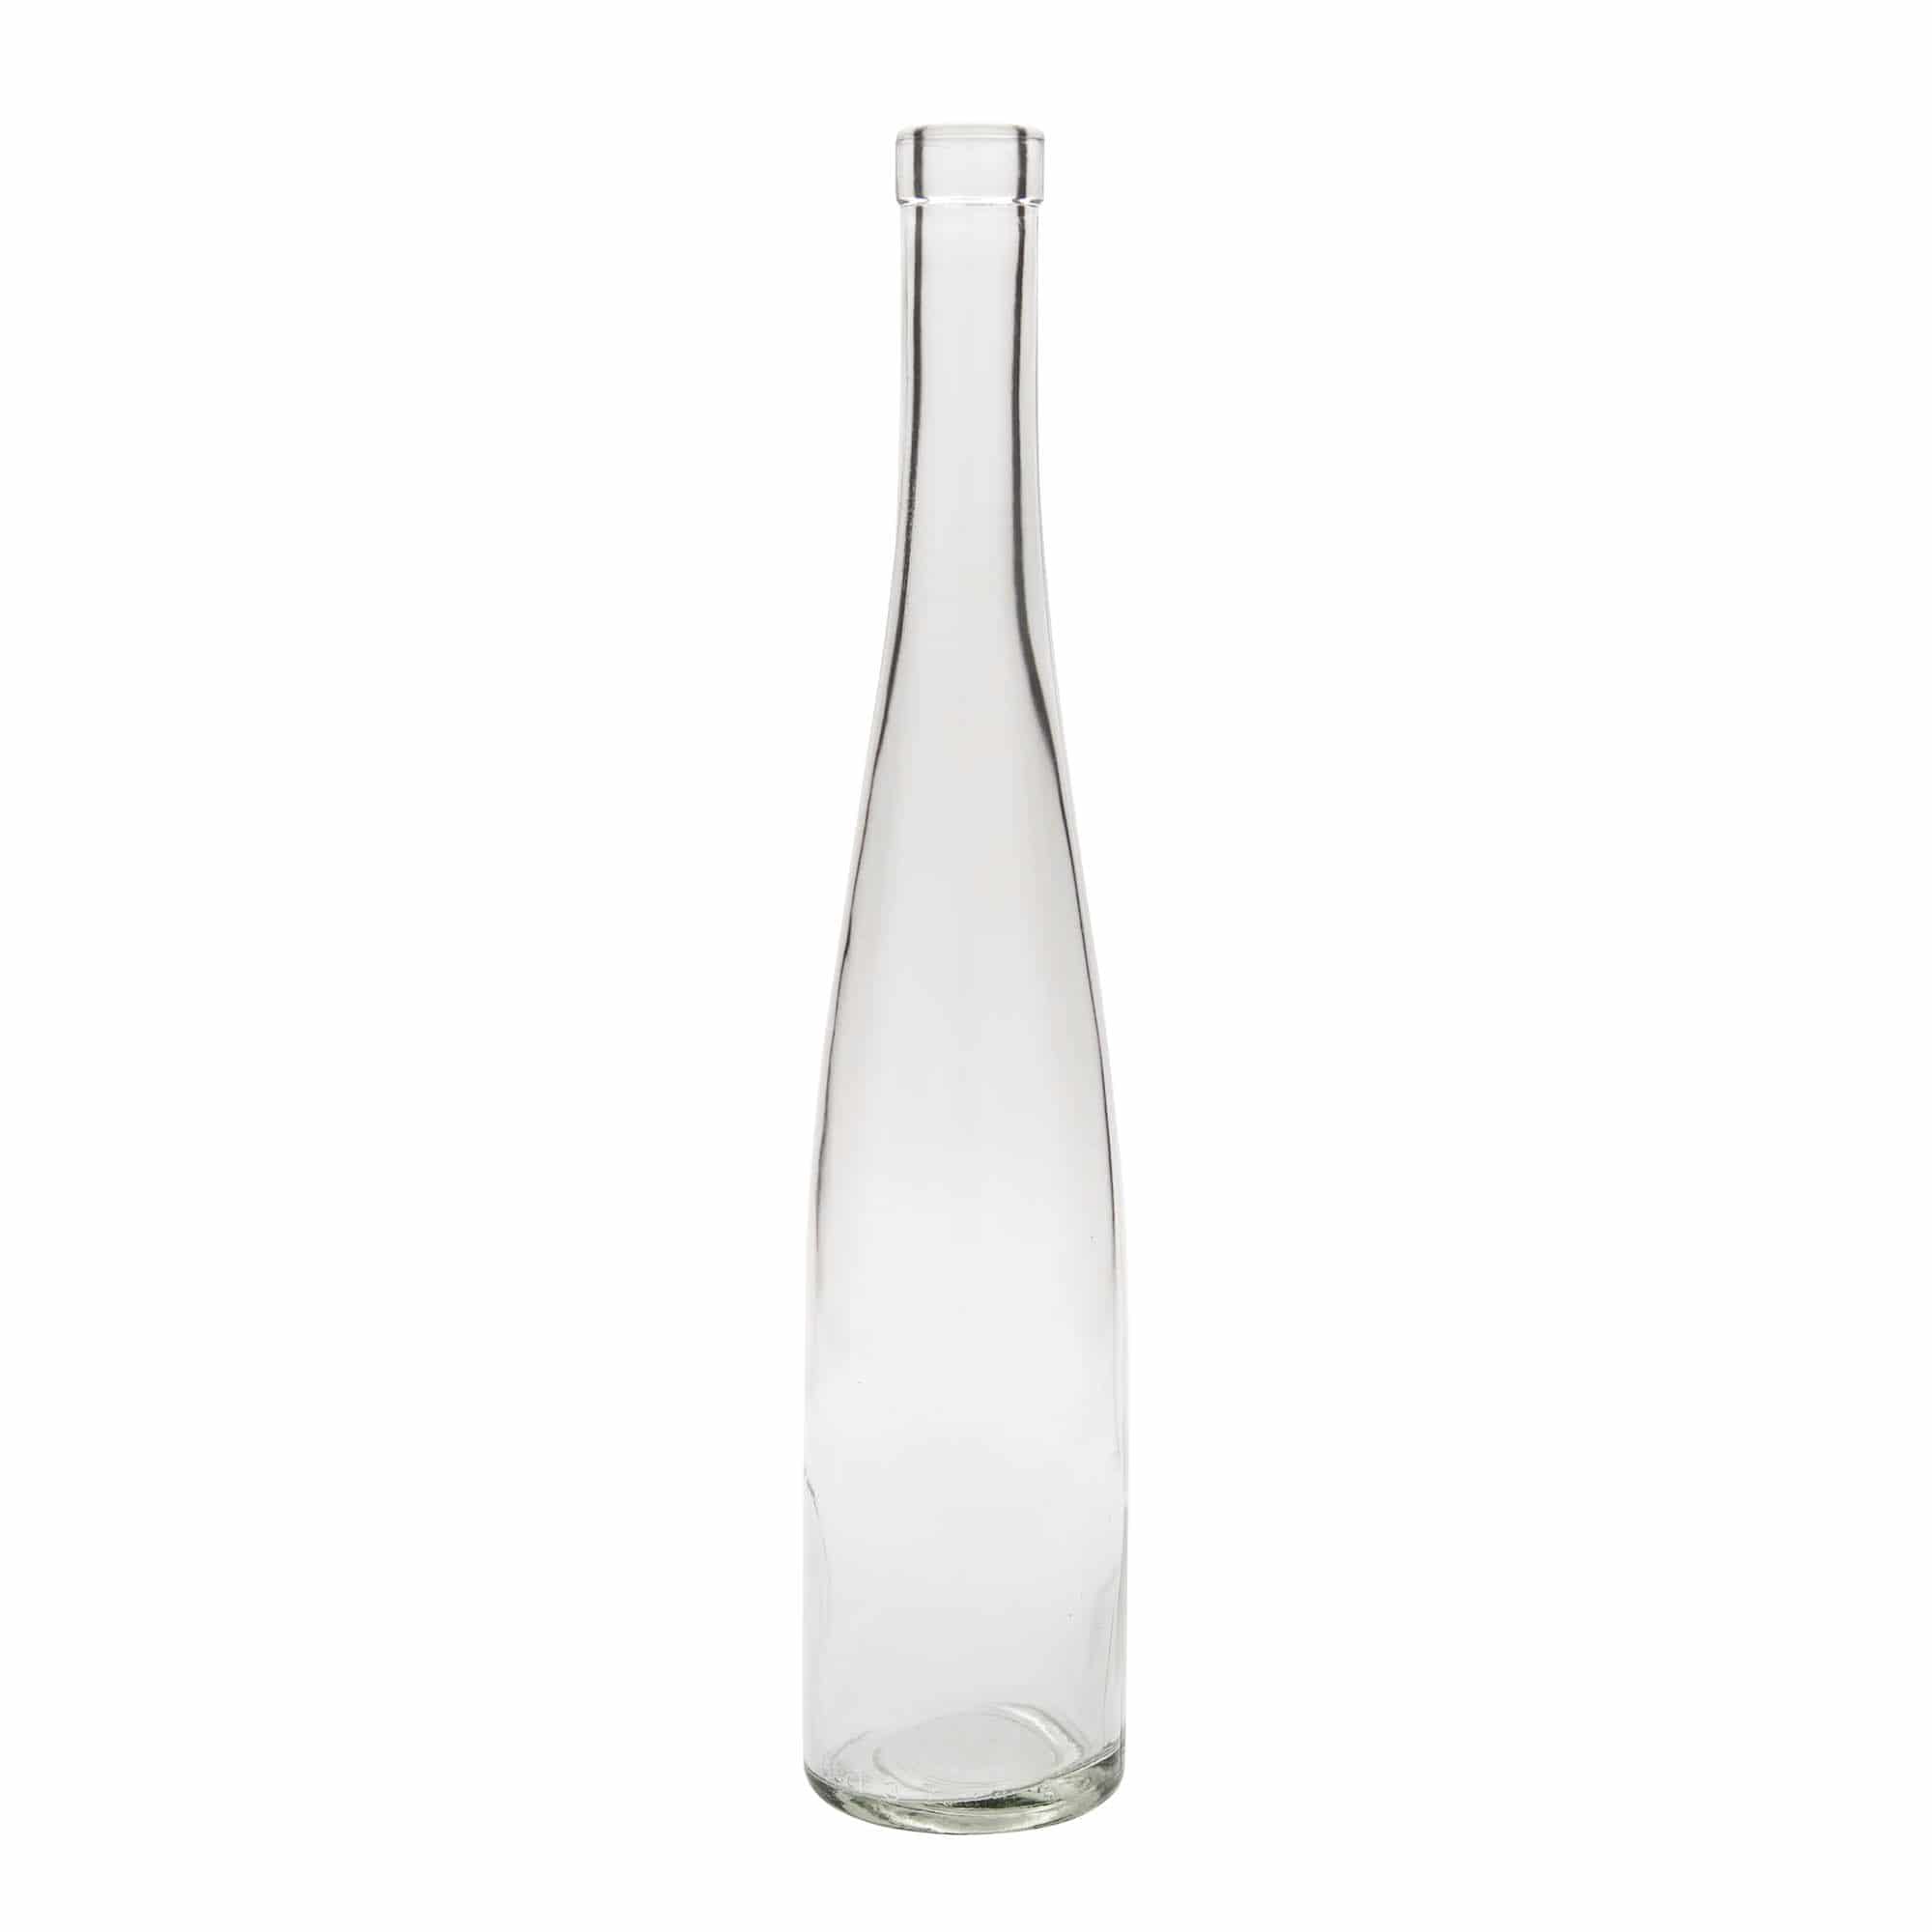 500 ml glass bottle 'Weinschlegel', closure: cork